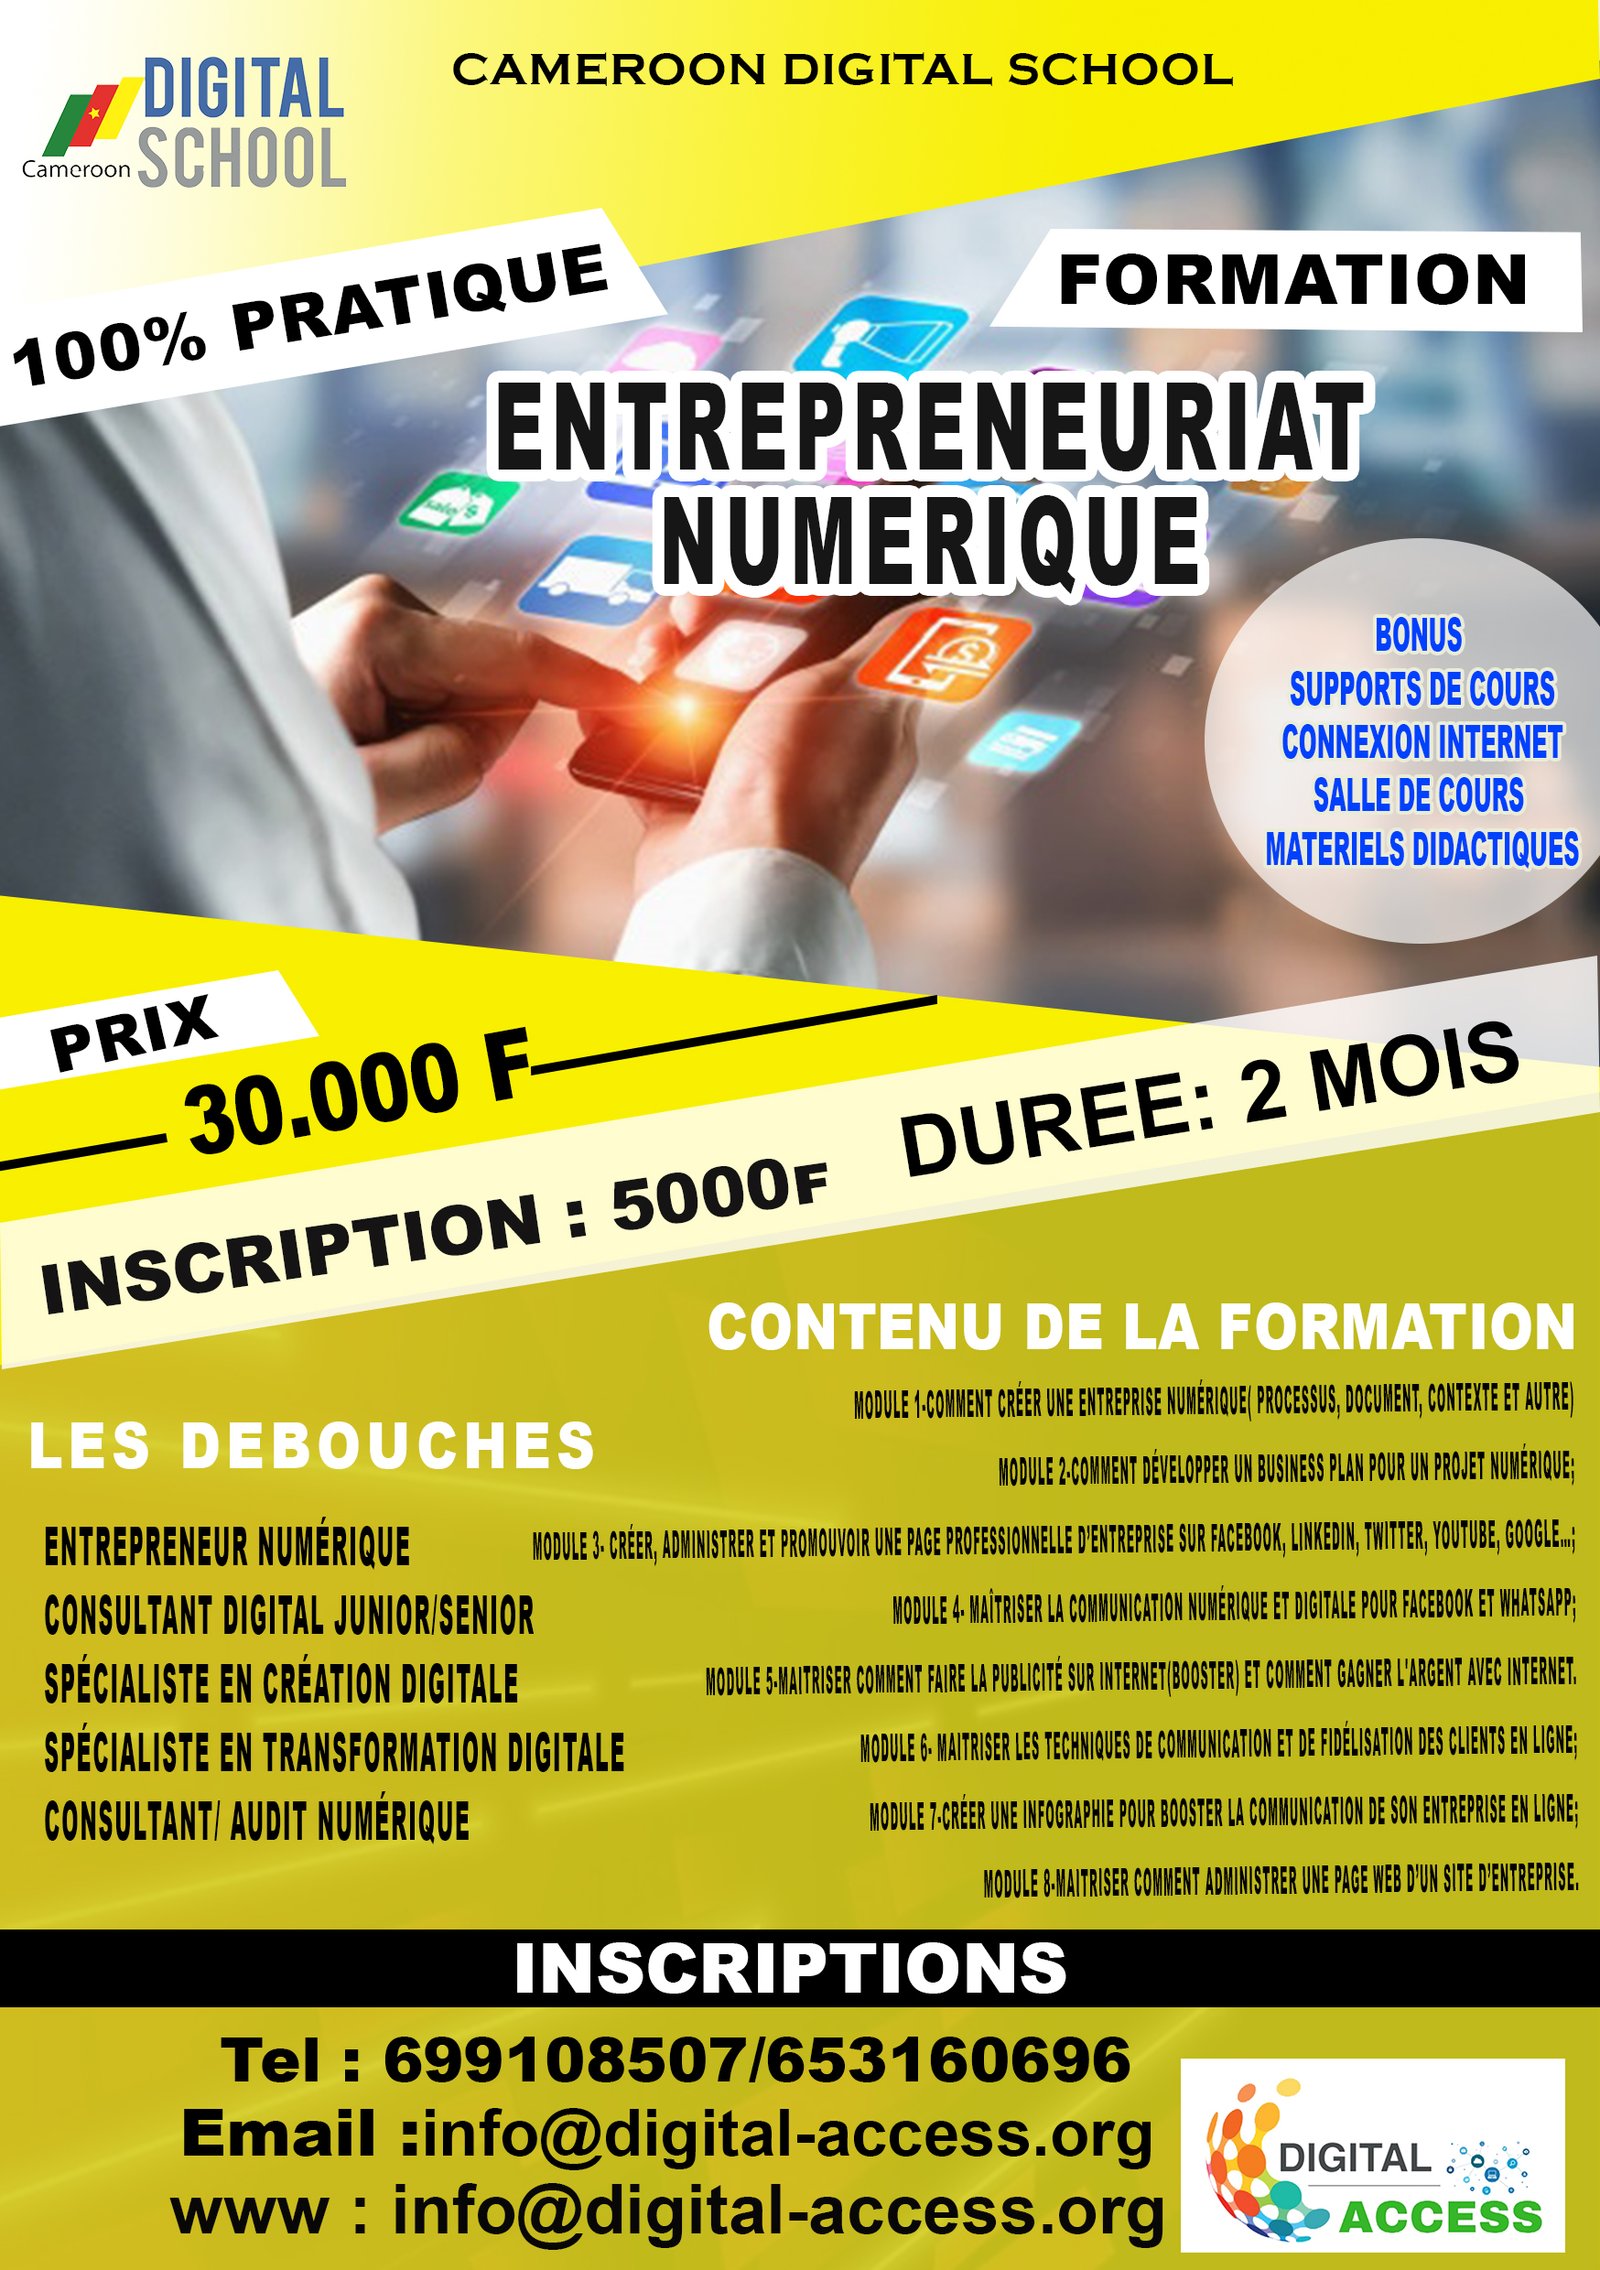 Entrepreneuriat Numérique